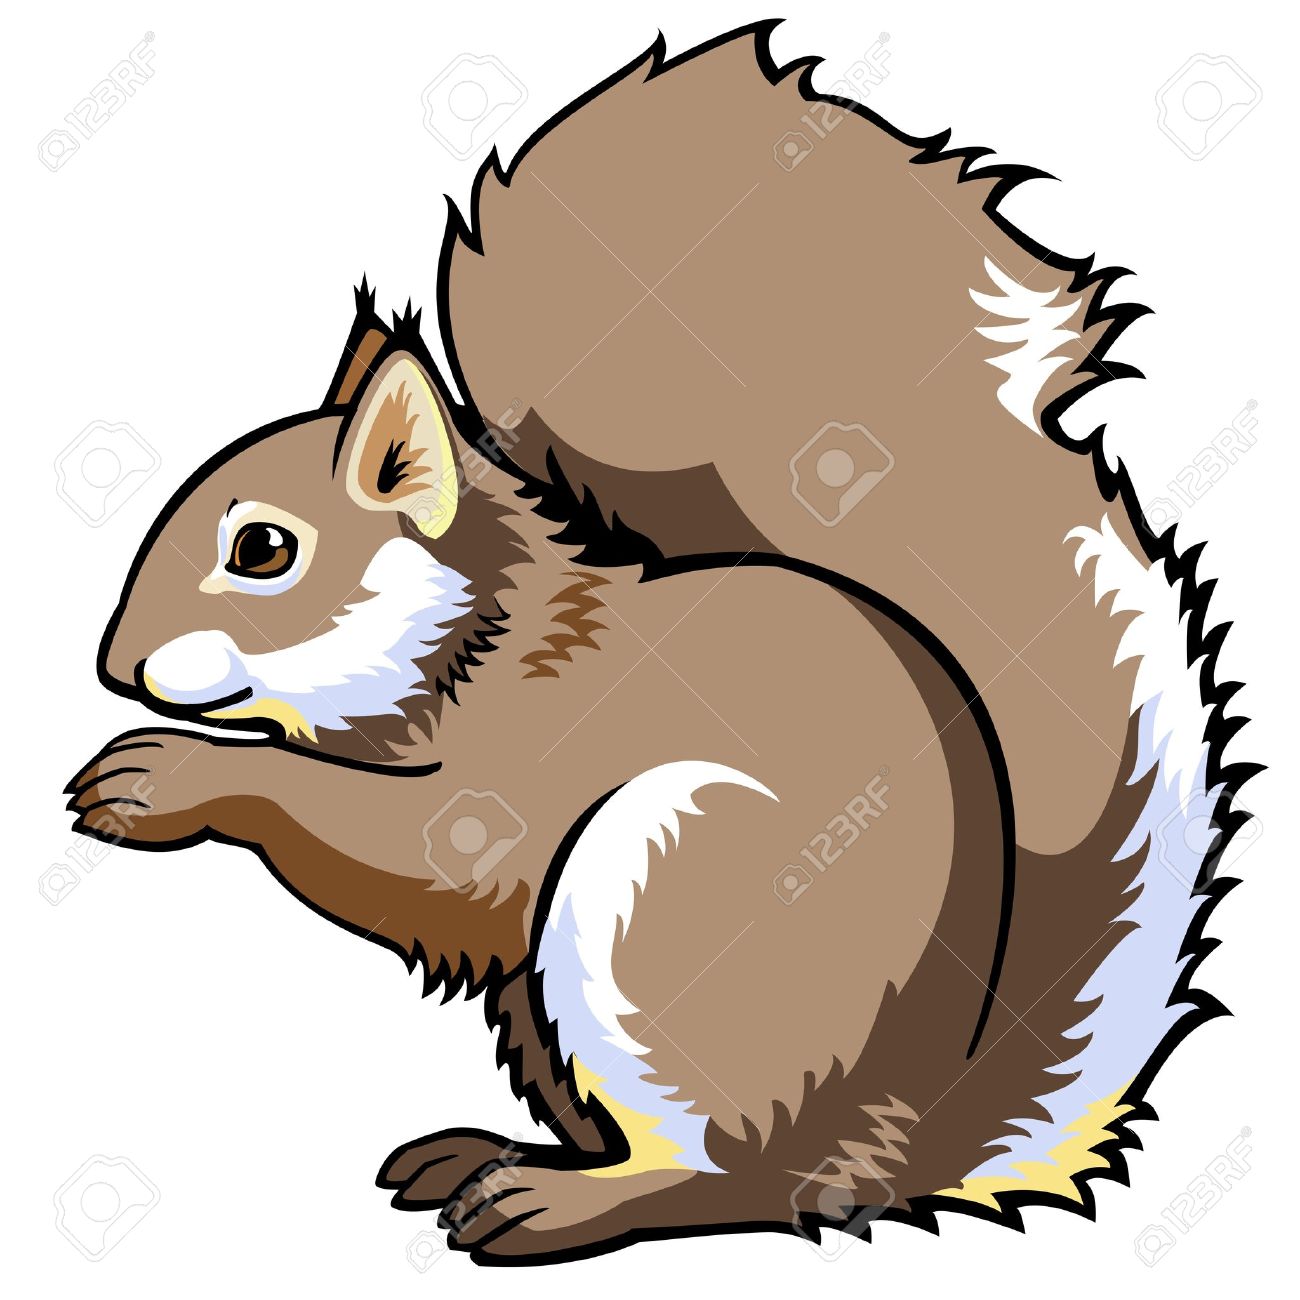 chipmunk clipart squirrel